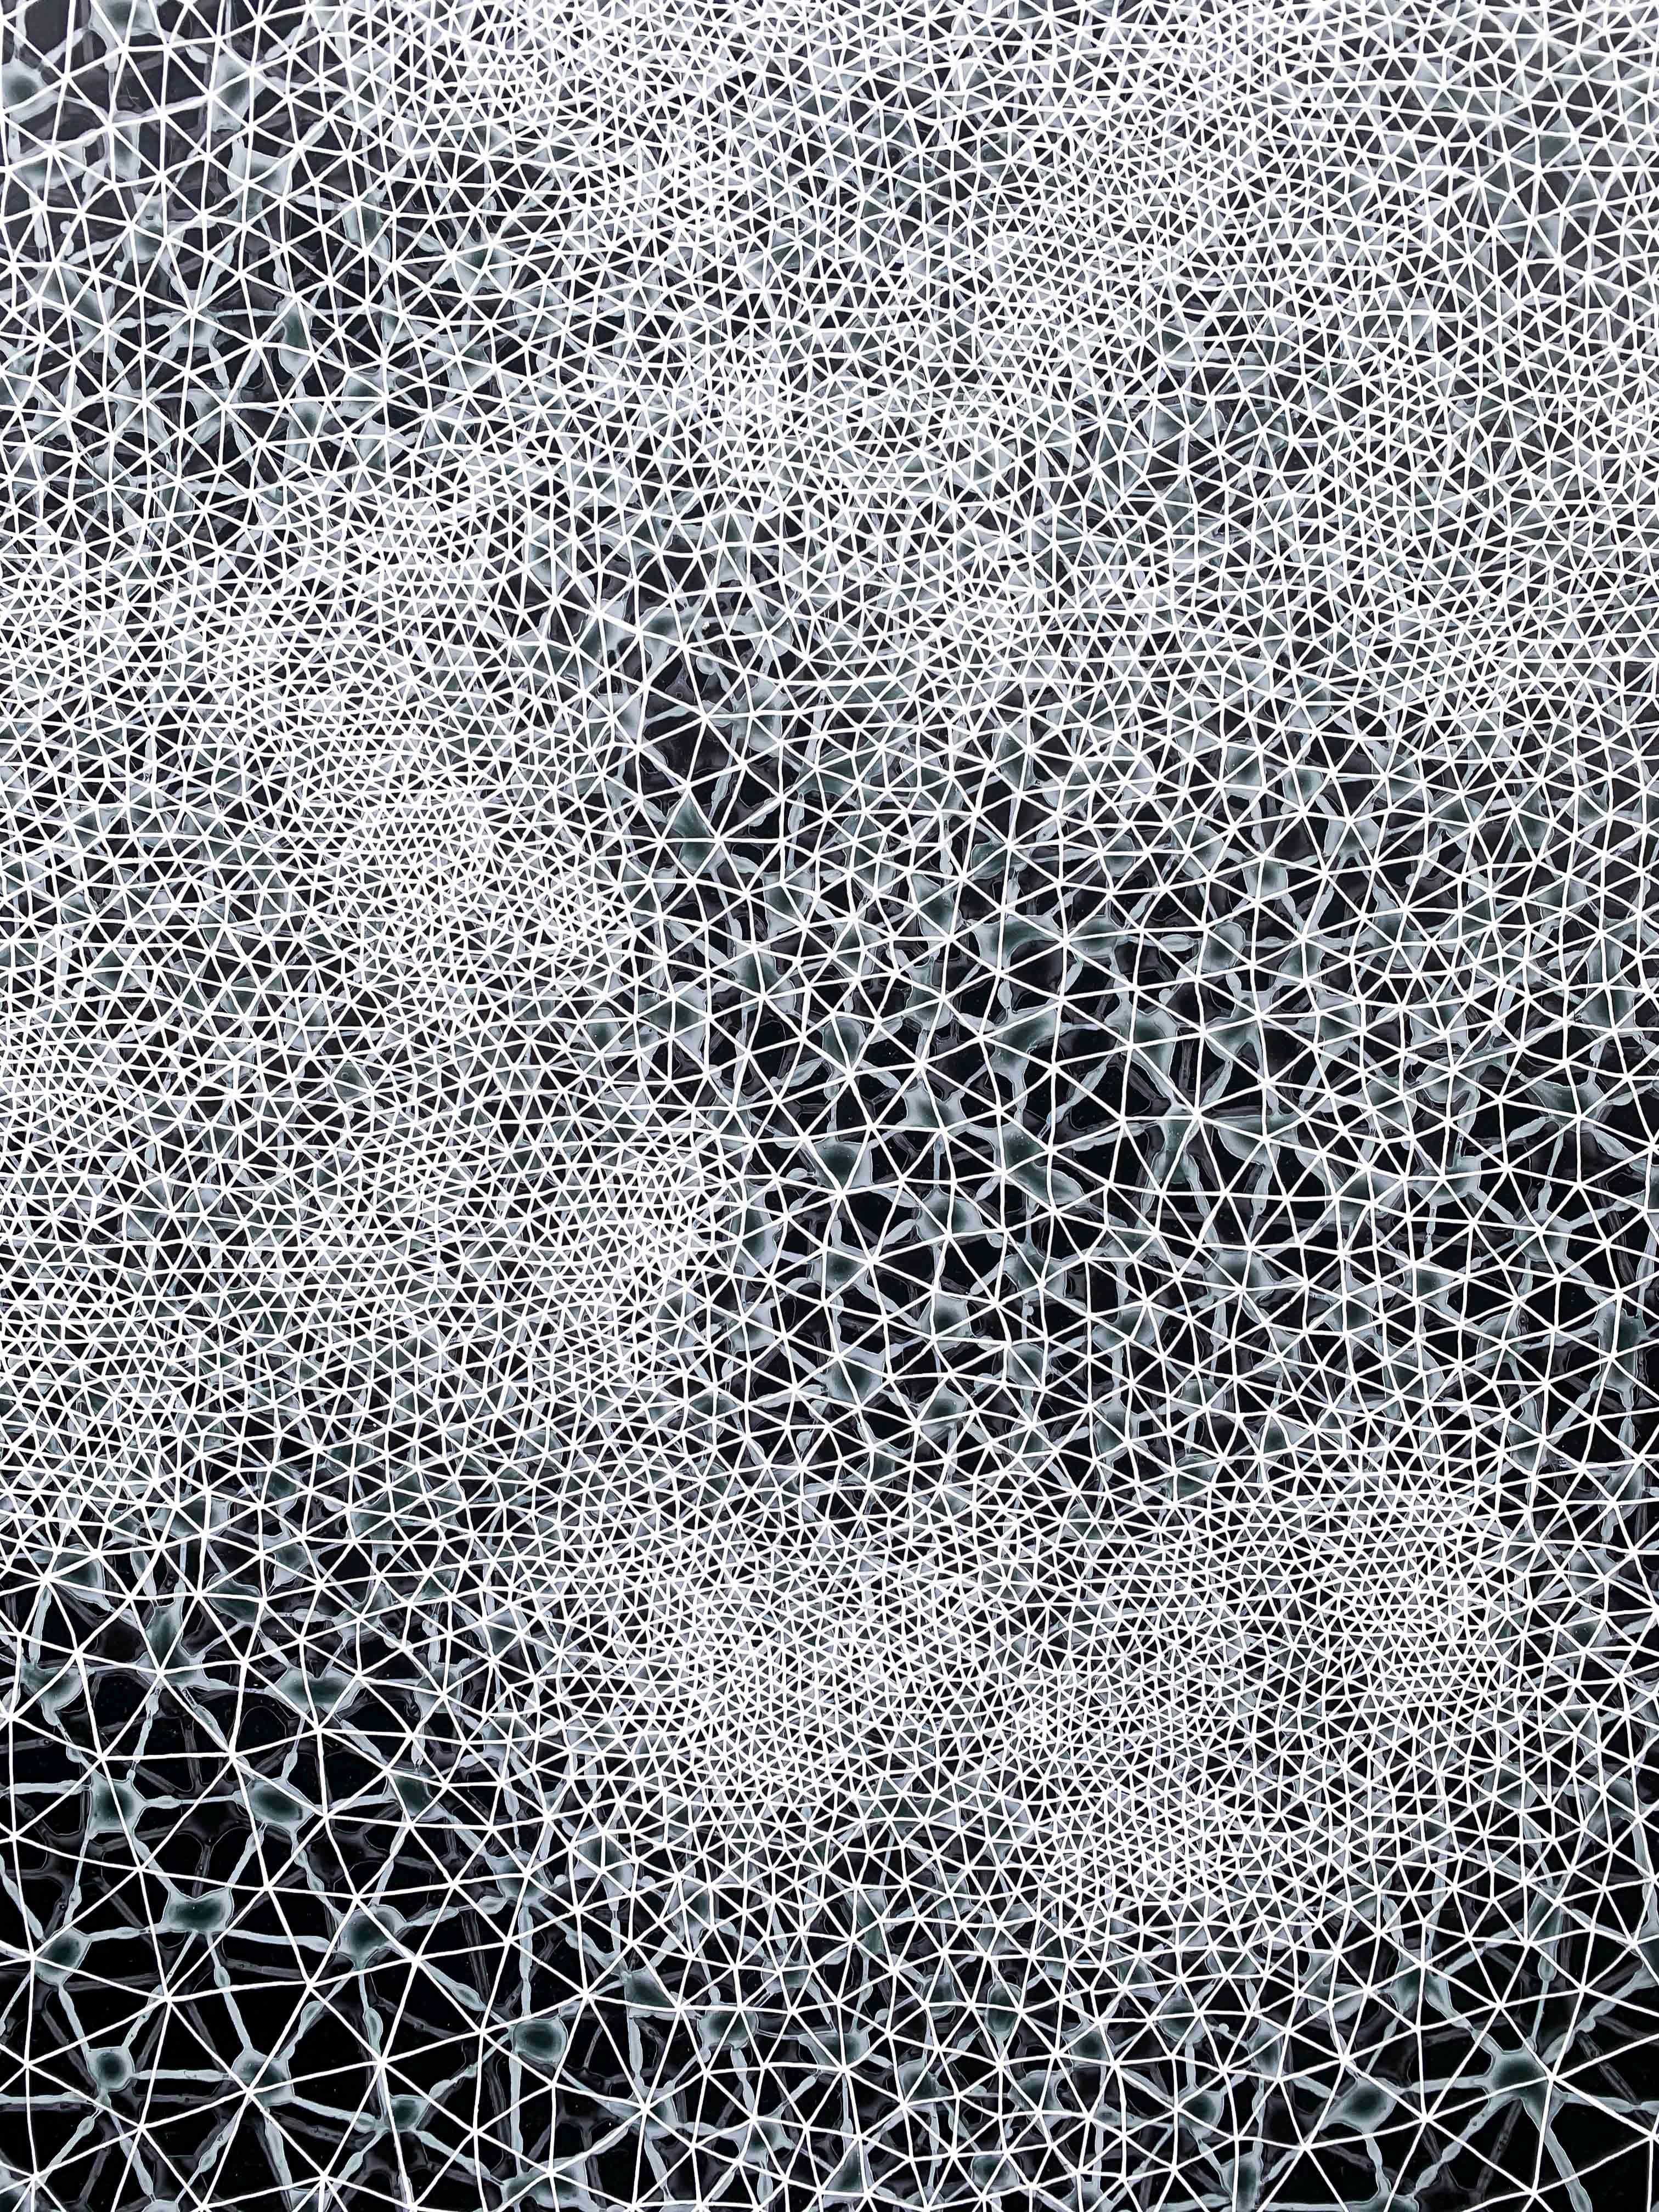 Cohérence - peinture abstraite géométrique diptyque en noir et blanc - Gris Abstract Painting par Hadley Radt